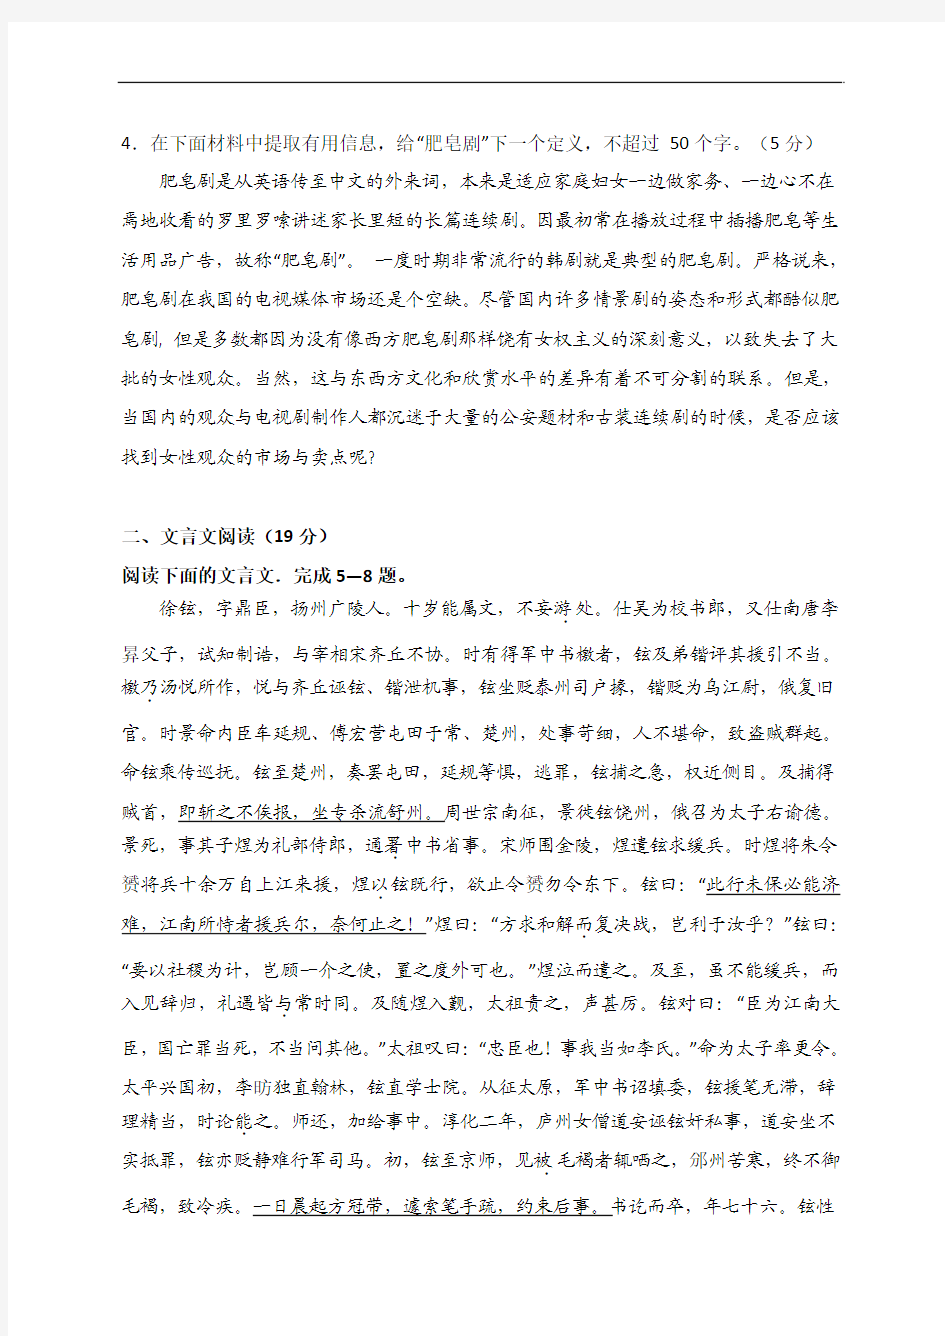 扬州市2008-2009学年度第一学期期末调研测试高三语文试卷